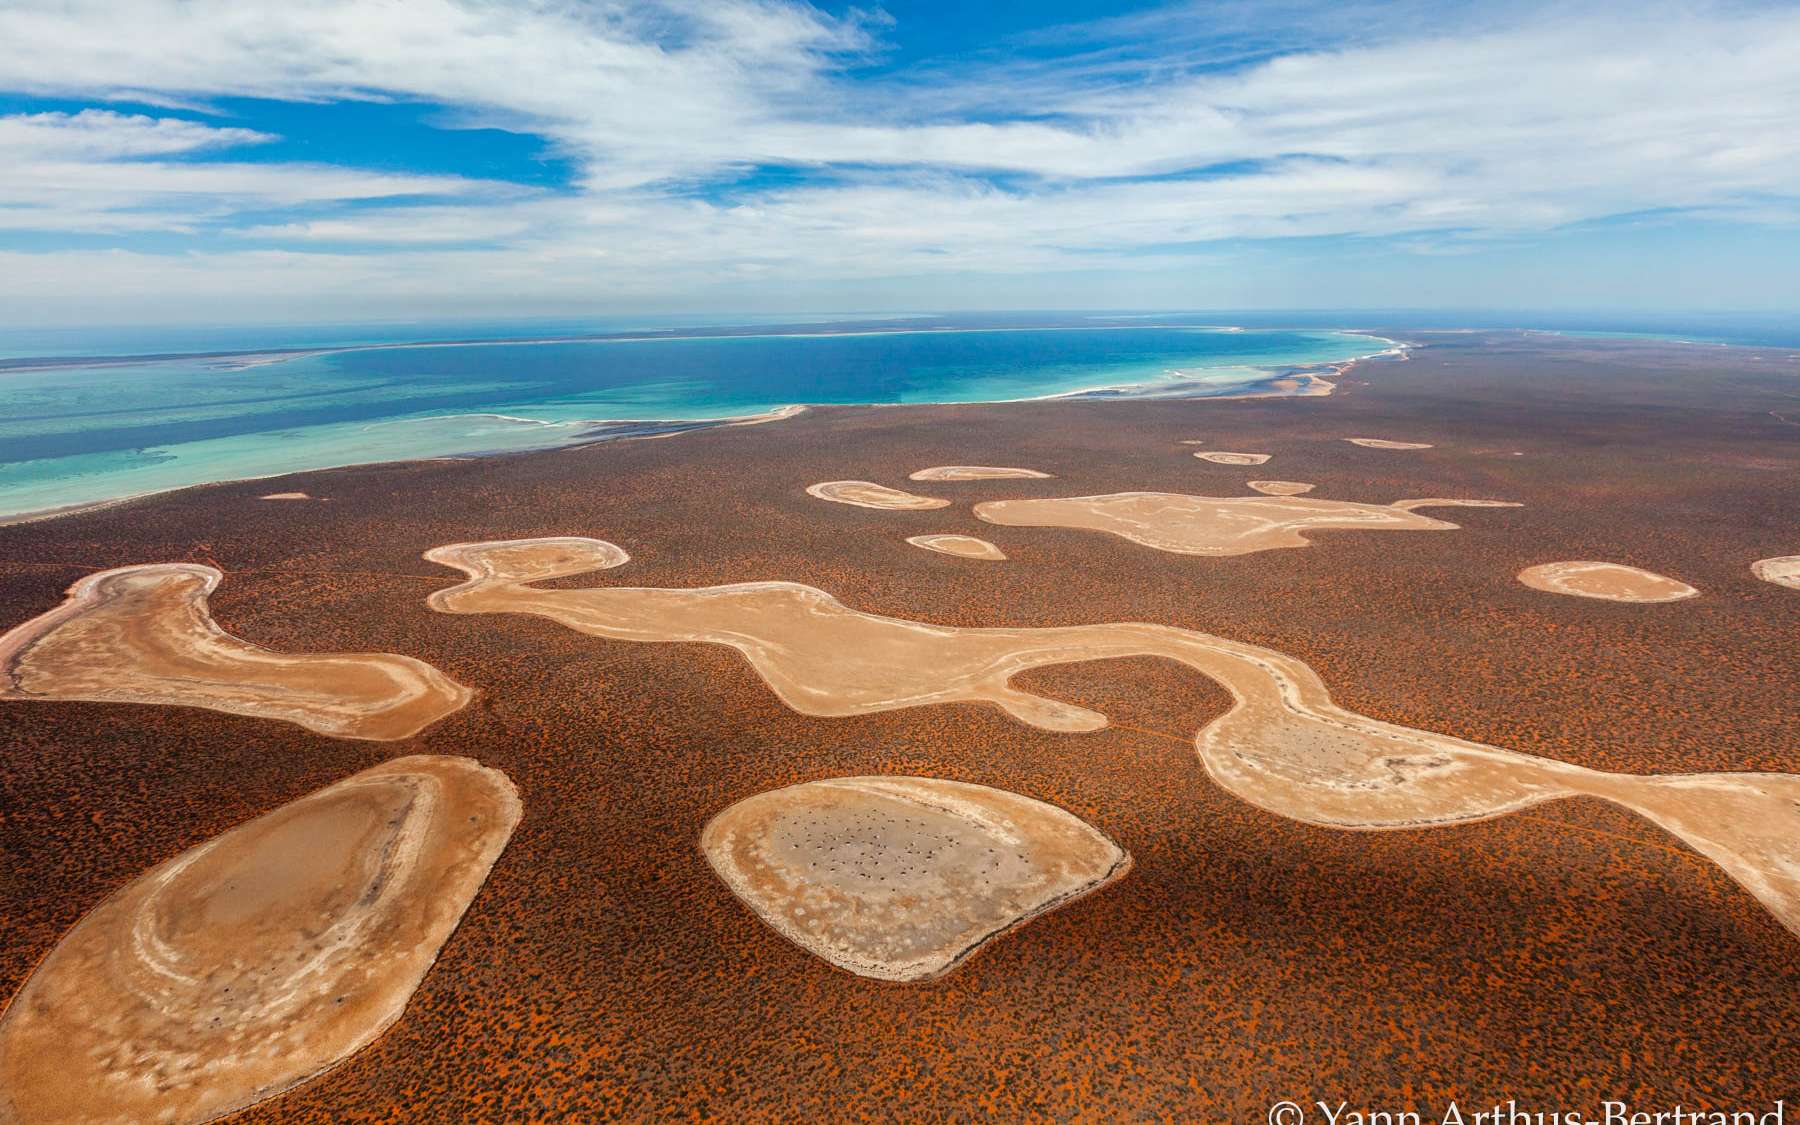 La péninsule de Péron est une maigre bande de terre située dans la baie Shark, à l'ouest de l'Australie. Elle est parsemée de petits lacs salins appelés « birridas » qui s'évaporent à l'arrivée des beaux jours. Sur cette vue aérienne, on peut voir les creux laissés par la disparition de l'eau.© Yann Arthus-Bertrand, tous droits réservés